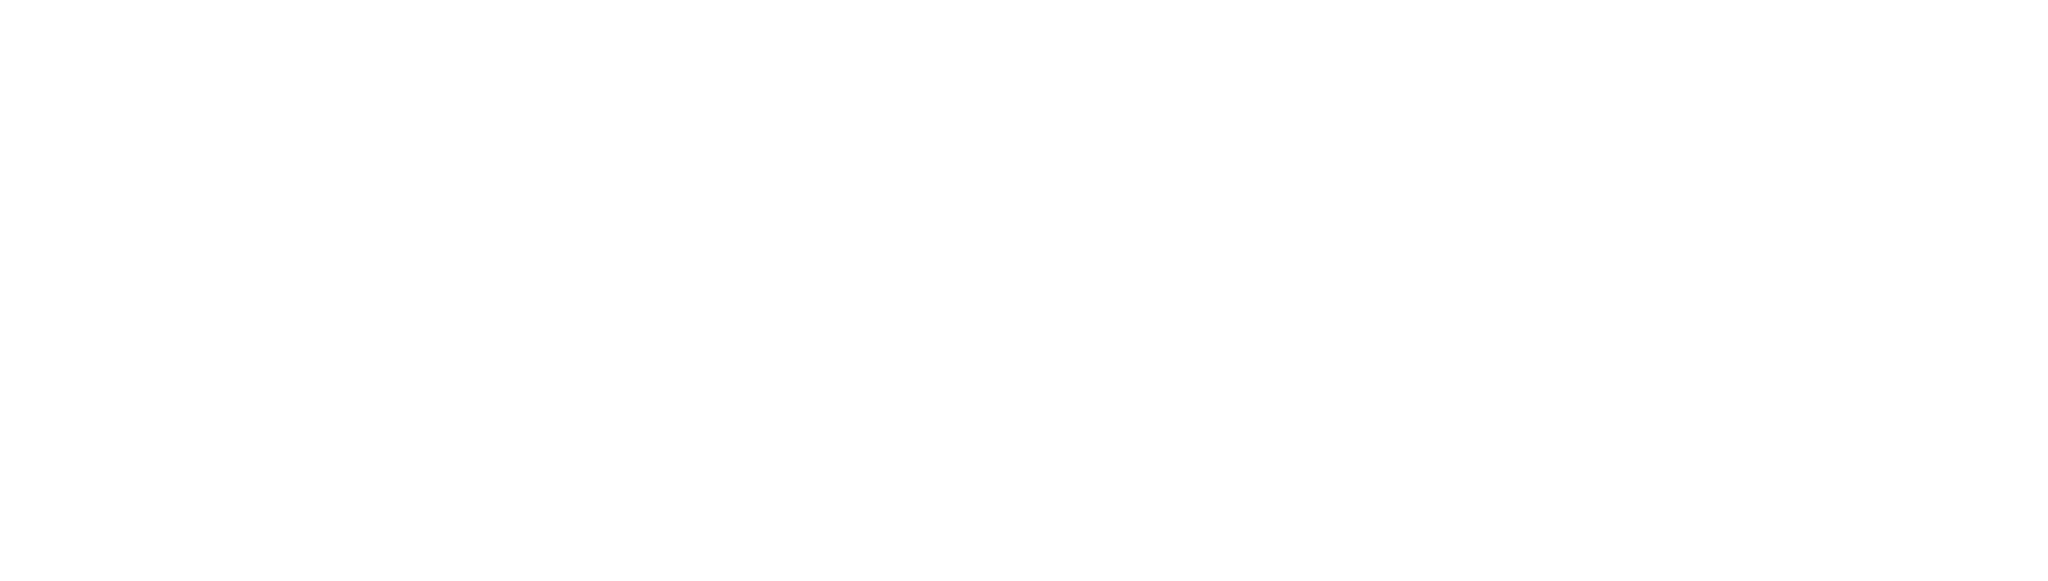 Almond Arboriculture